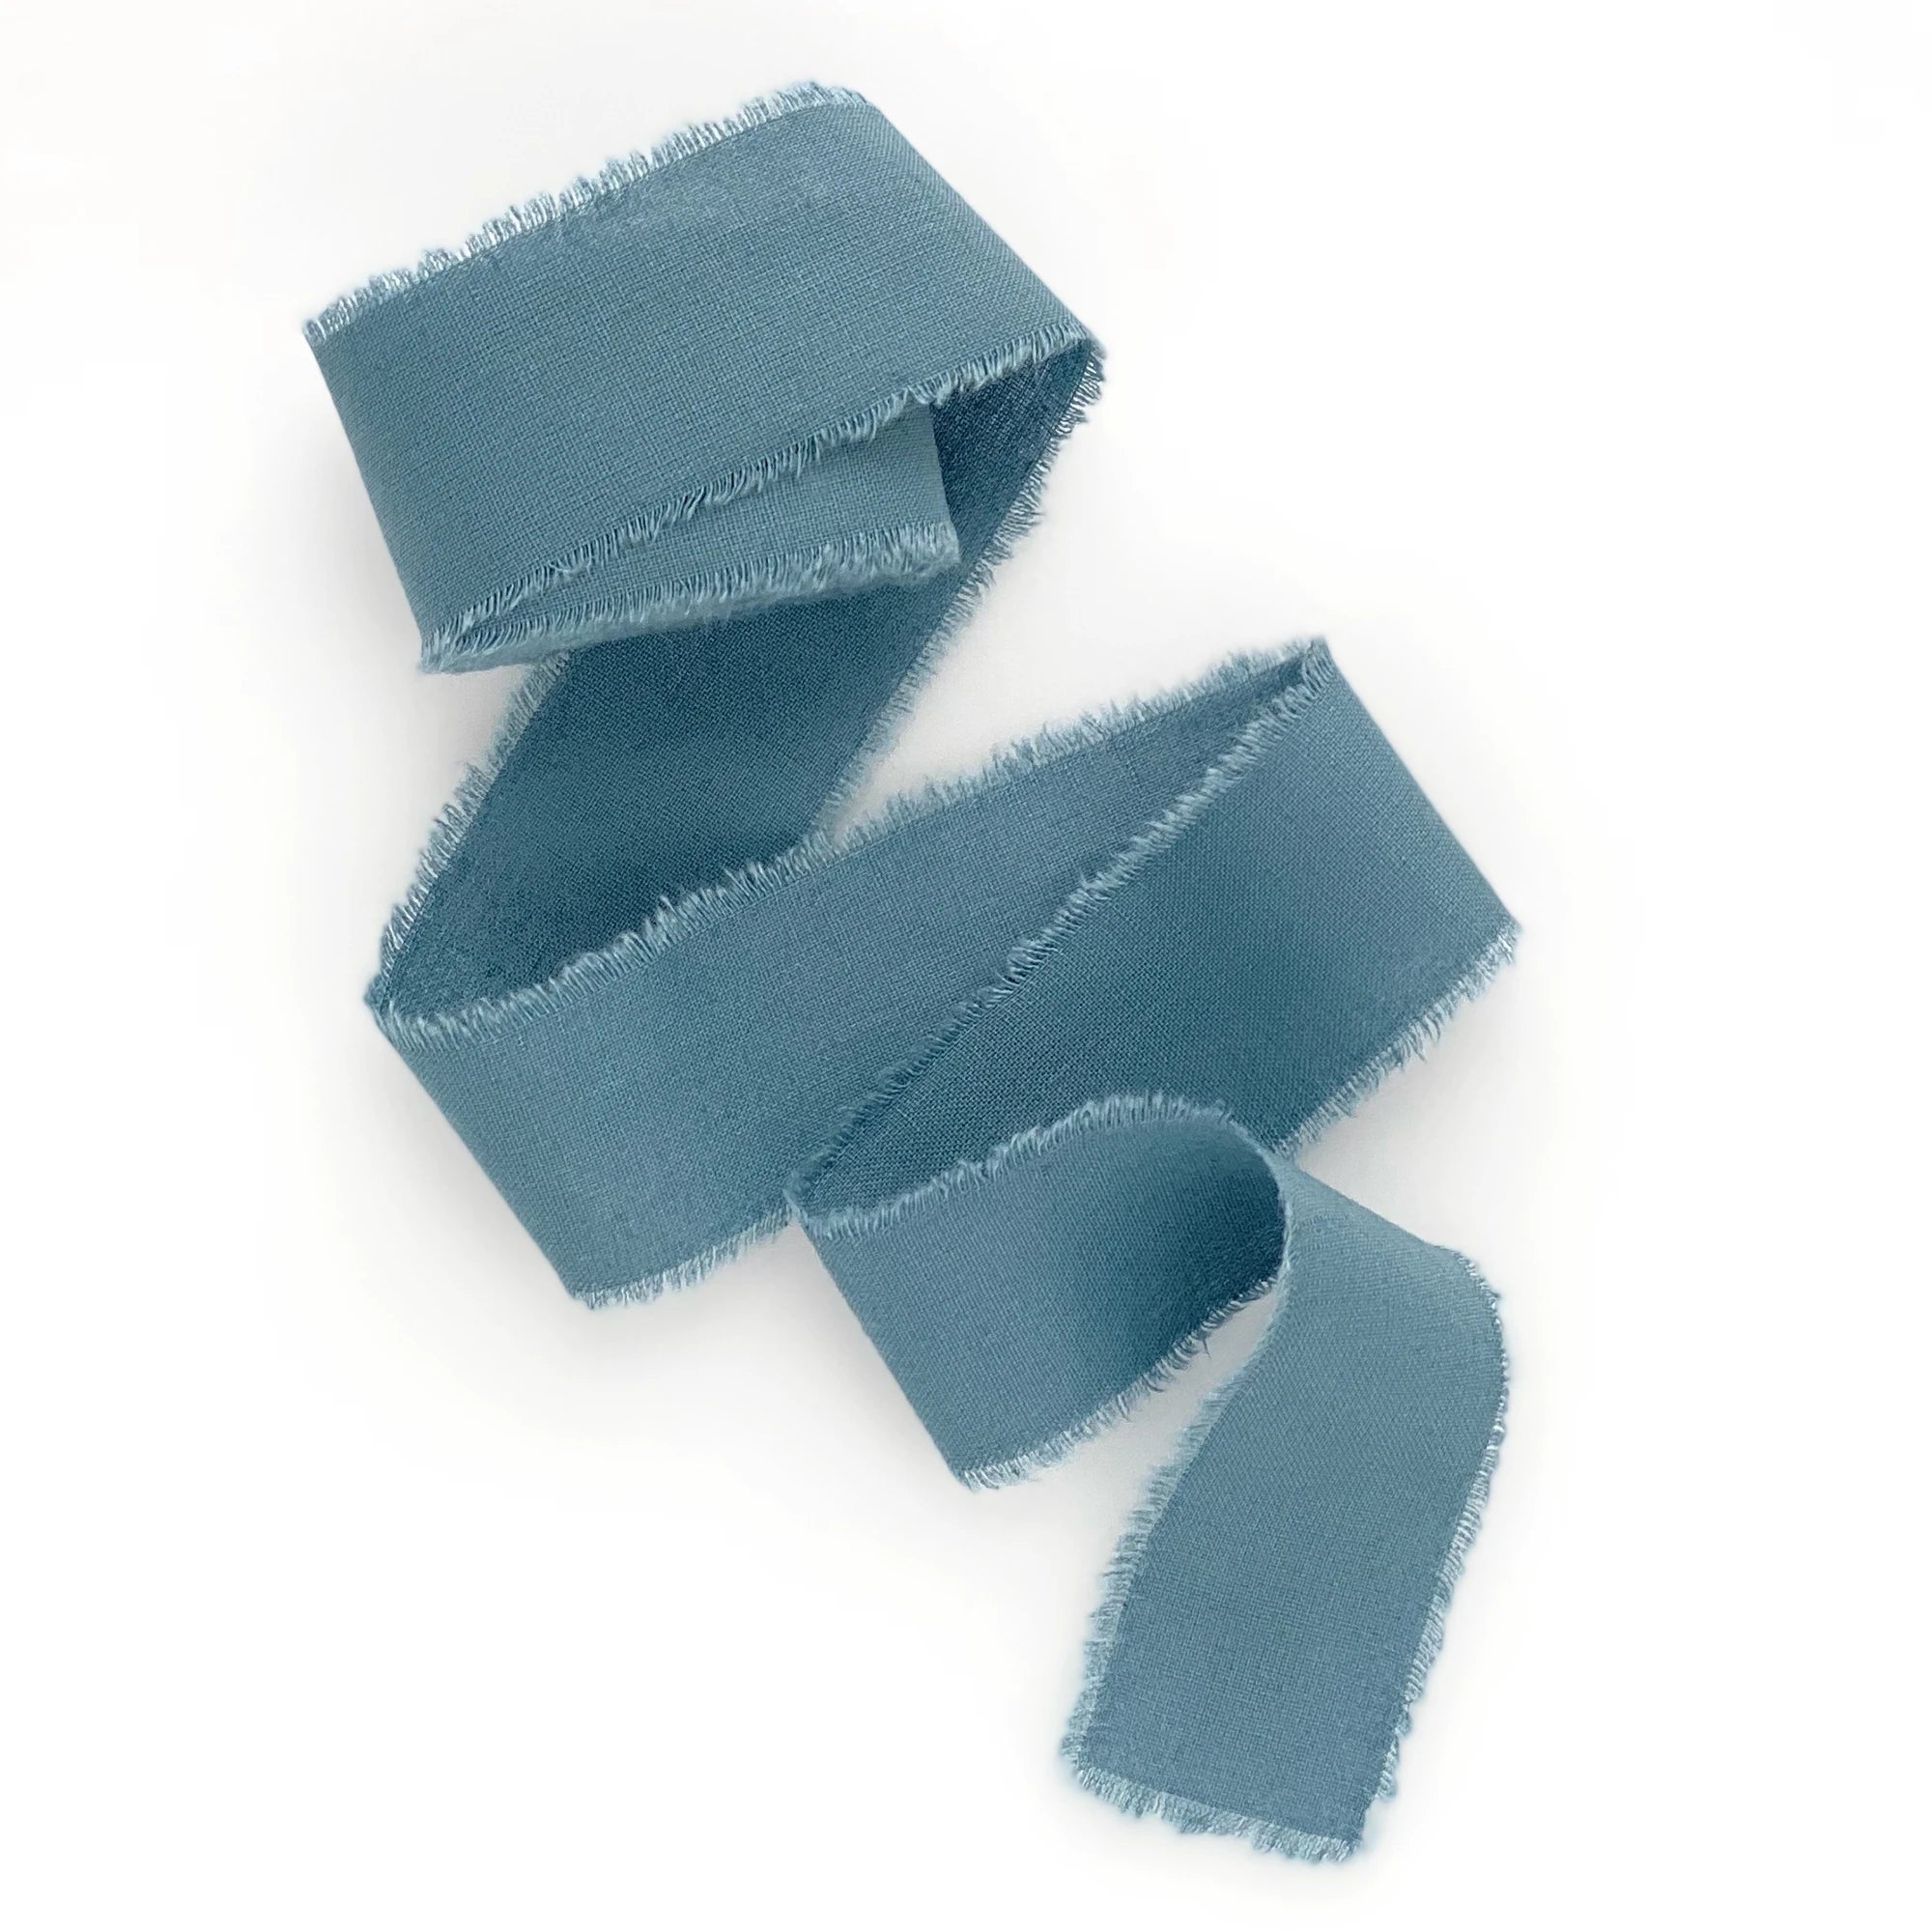 Blue ribbon Blue ribbon, Blue Ribbon material, blue, angle, ribbon